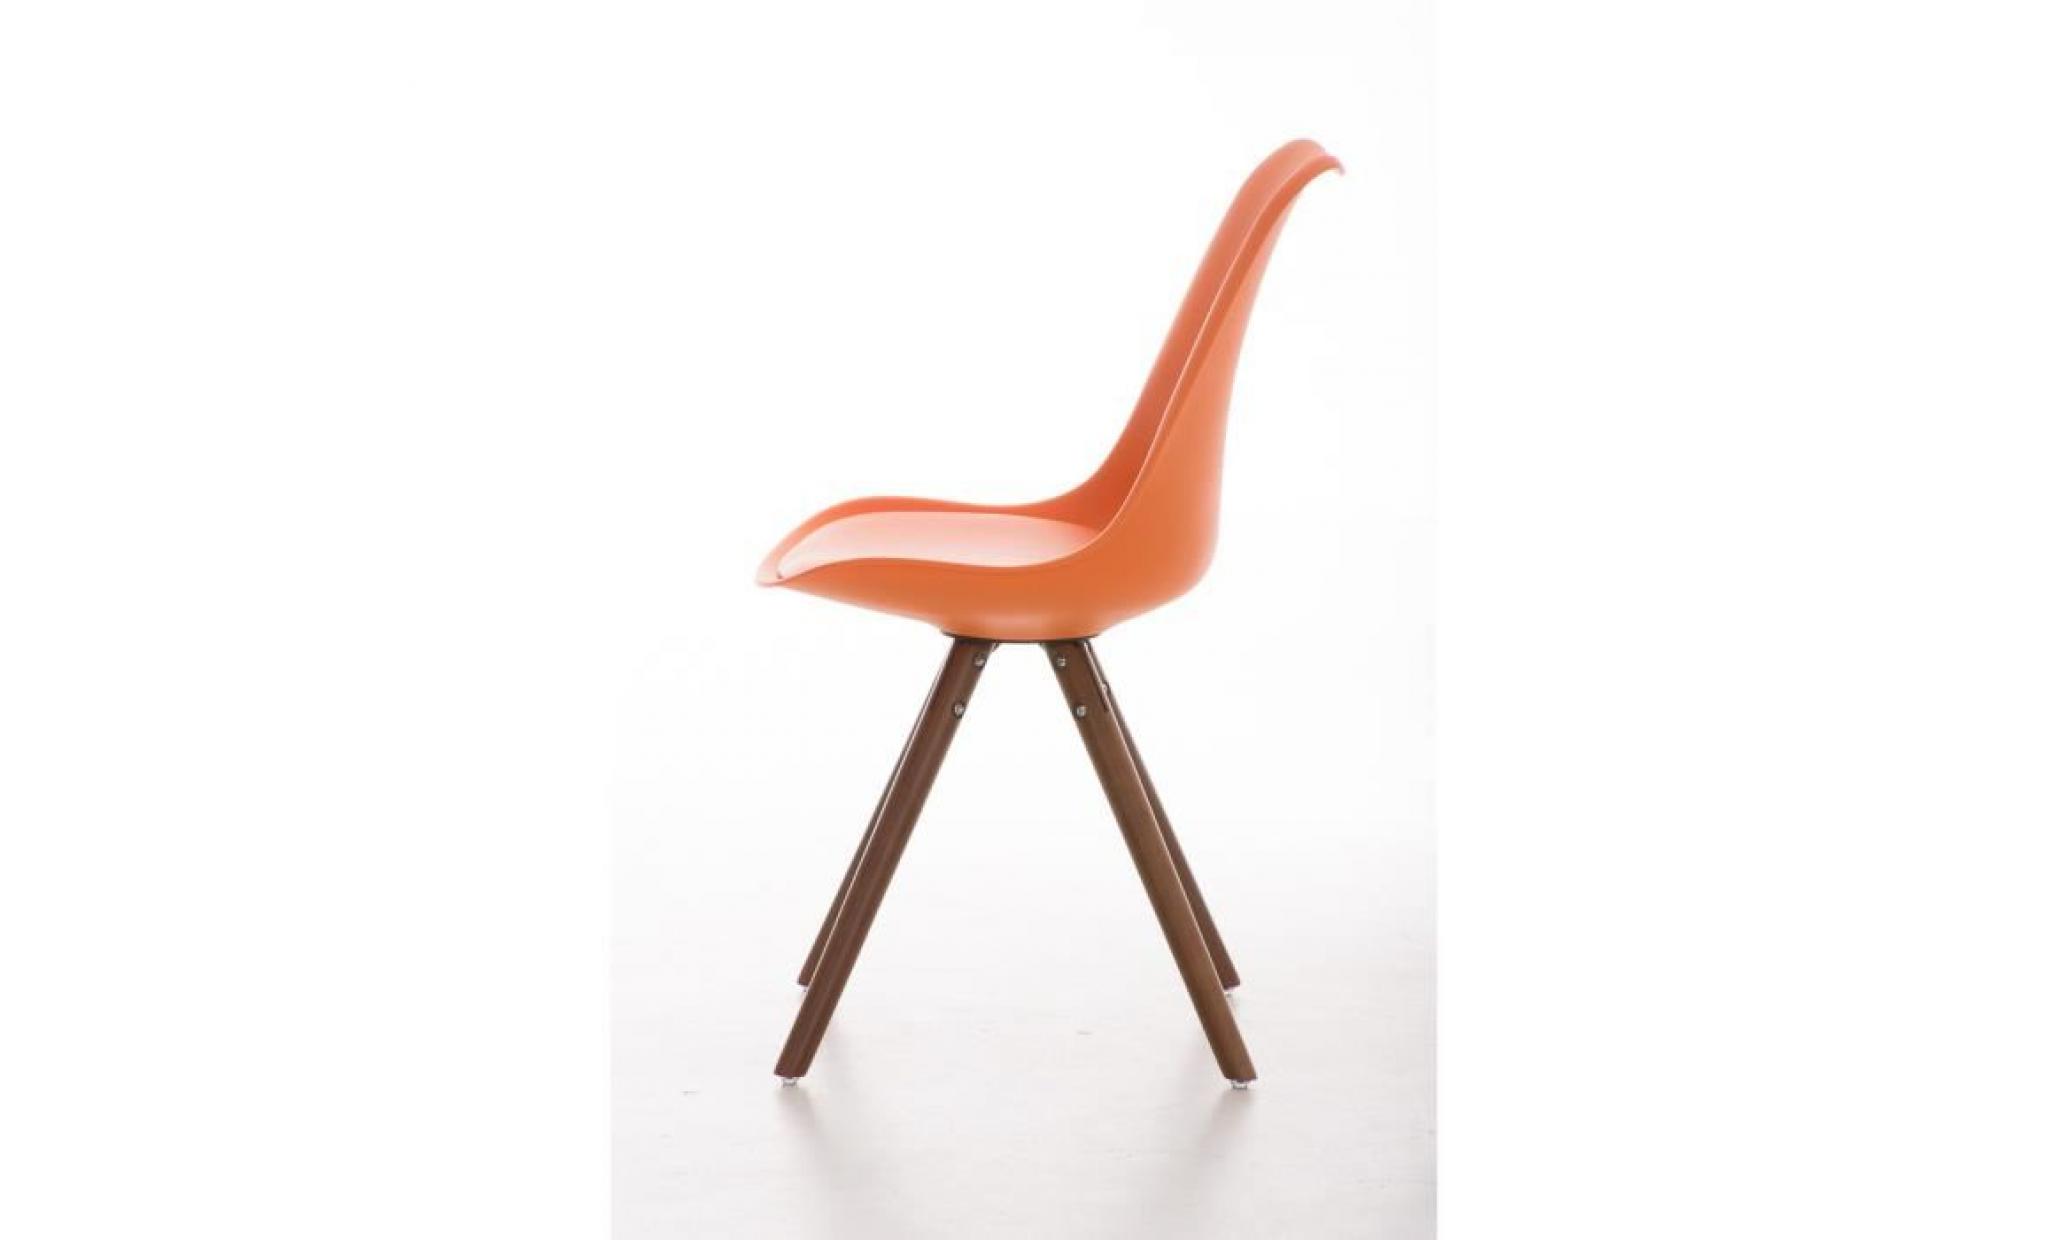 clp chaise de visiteurs de design rétro pegleg avec piétement en bois noix, mélange de matériaux en plastique, cuir synthétique e... pas cher